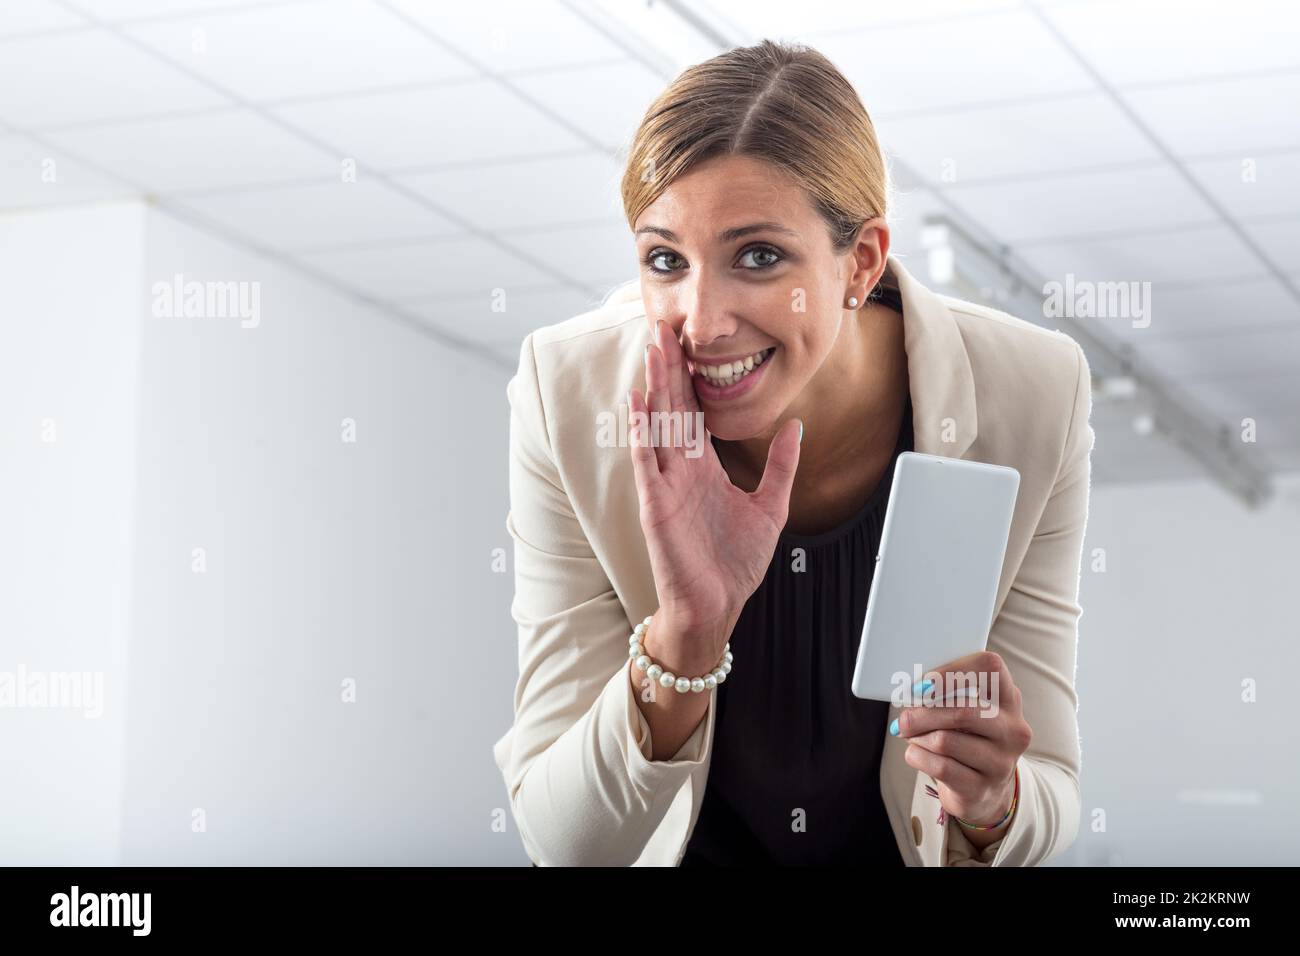 The office gossipmonger whispering her news Stock Photo